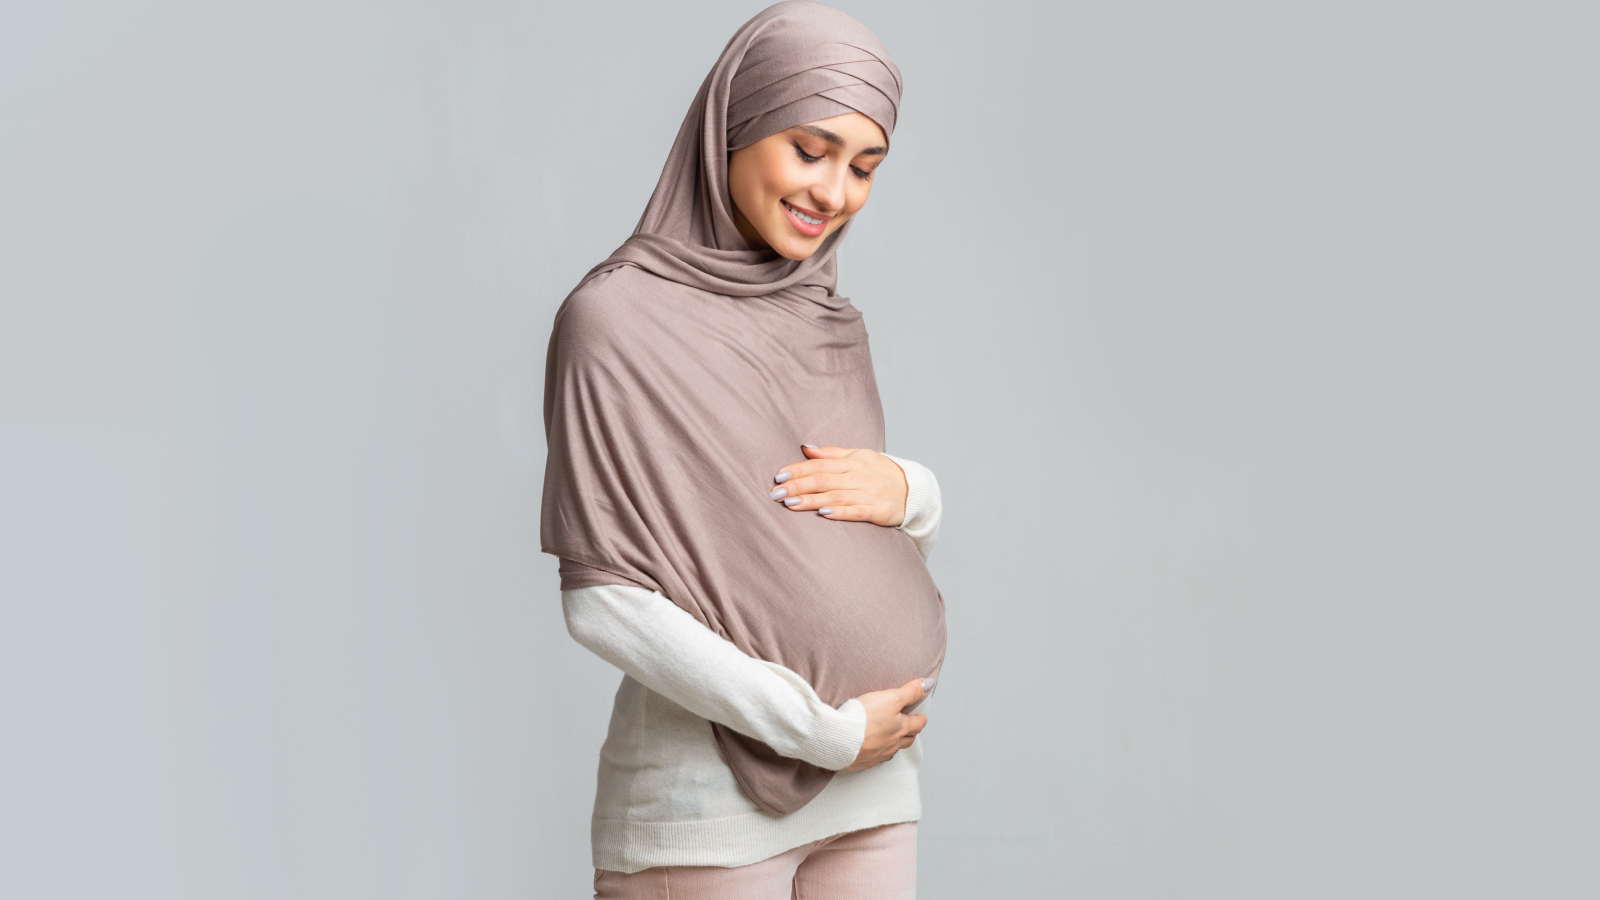 شروط الحج للحامل والمخاطر المحتملة عند أداء المناسك